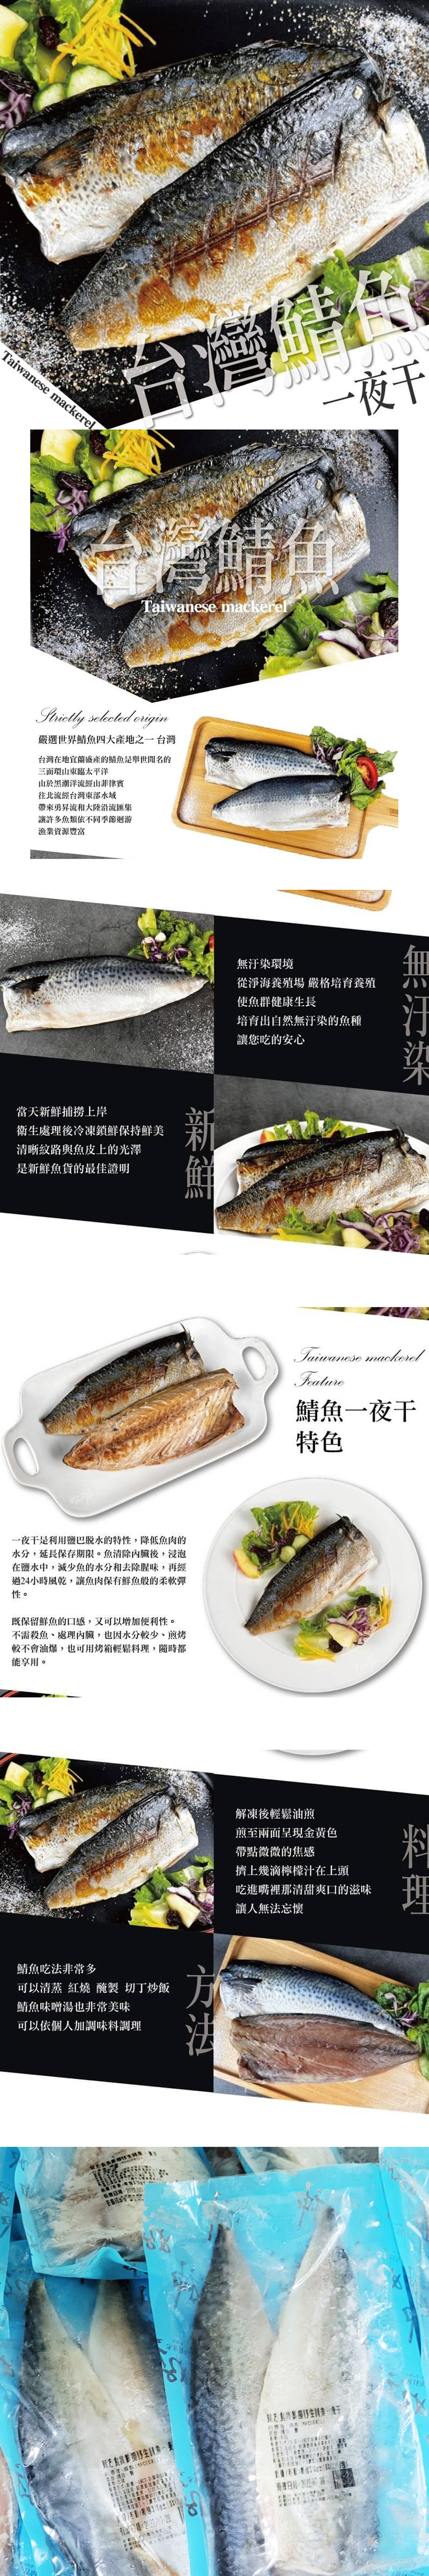 【饗讚】台灣鮮凍薄鹽鯖魚一夜干(120g)